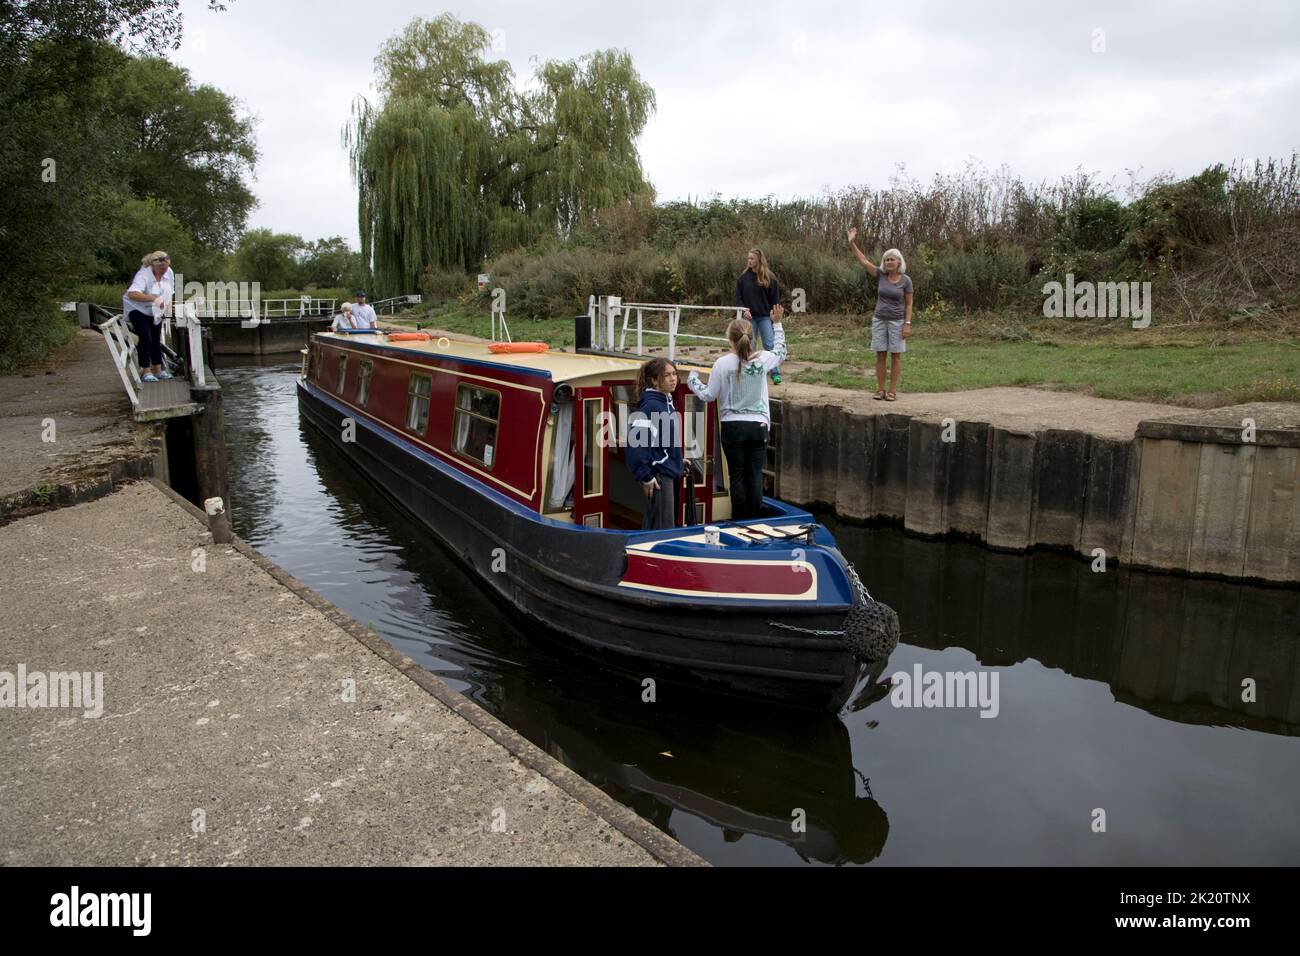 Famille appréciant un voyage sur le bateau à rames sur la rivière Avon Warwickshire Royaume-Uni Banque D'Images